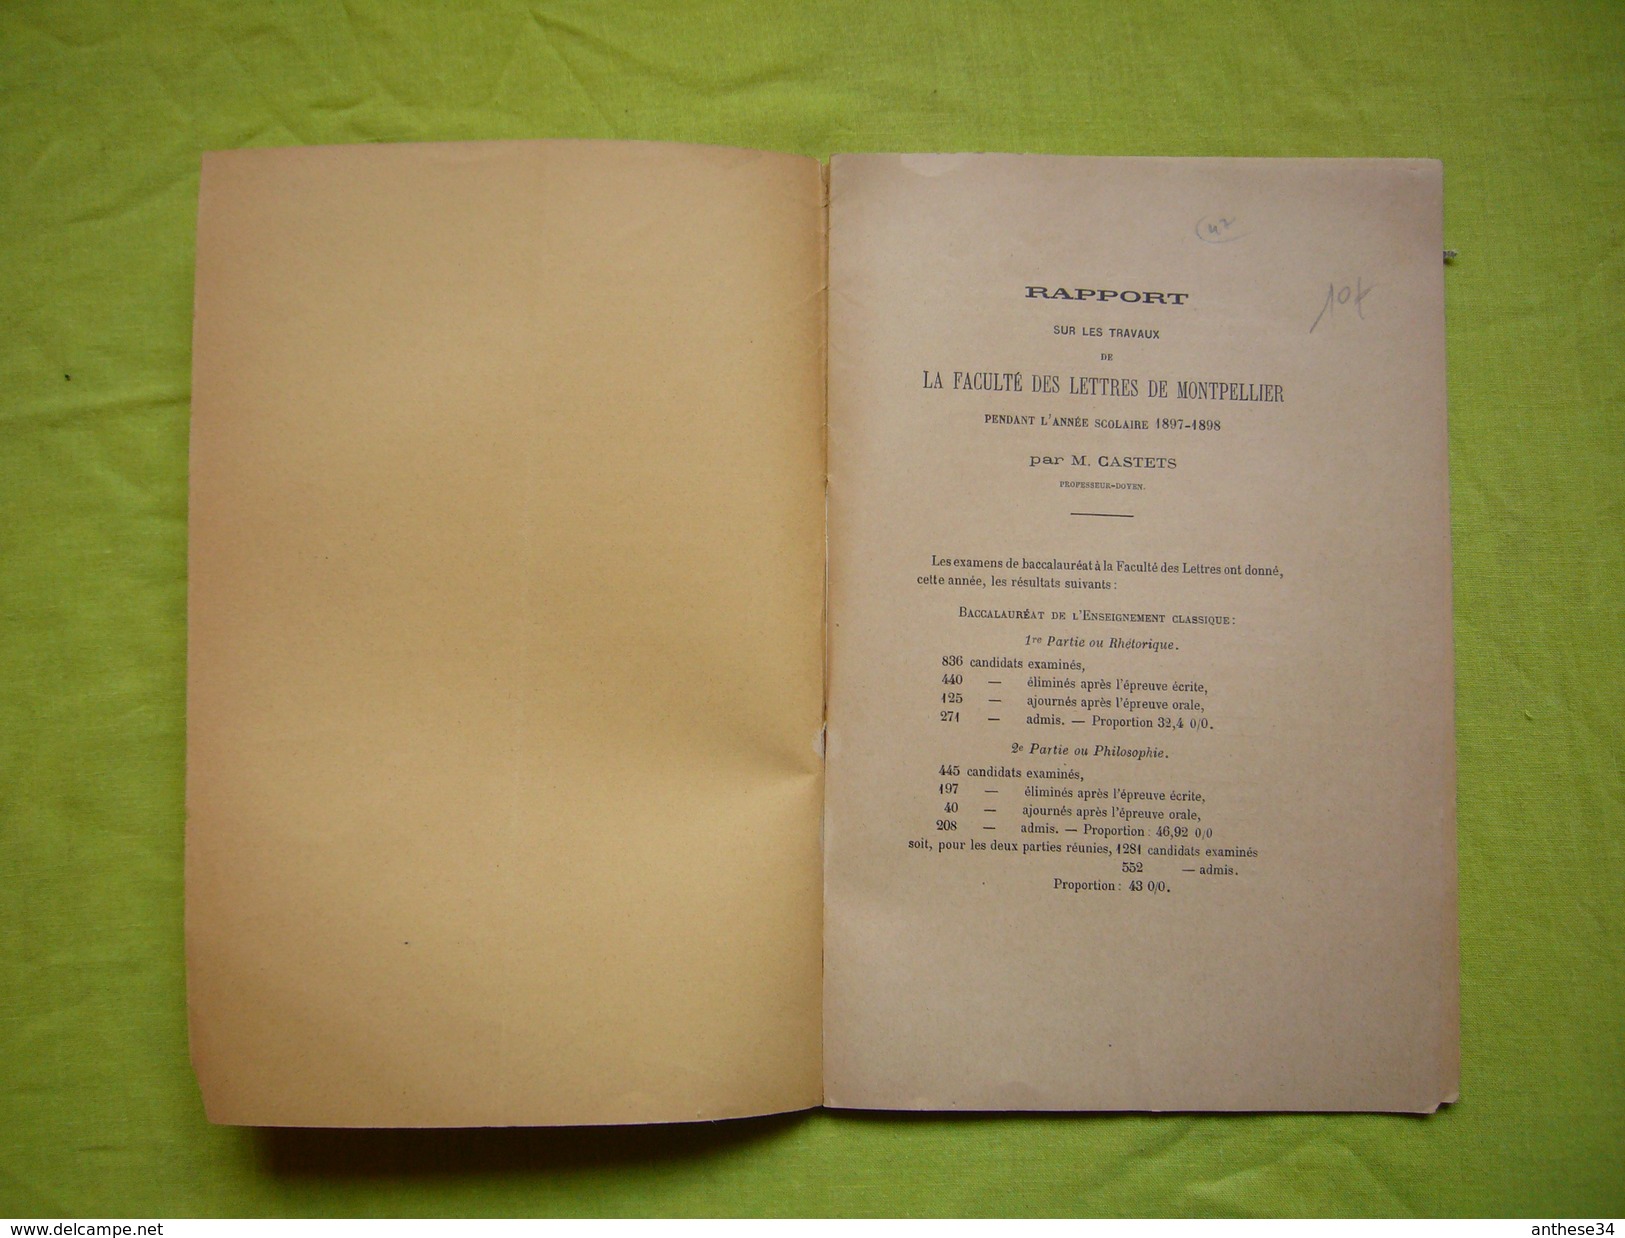 Plaquette 1897 1898 Rapport Sur Les Travaux Faculté Des Lettres De Montpellier Par Mr Castets - Non Classés